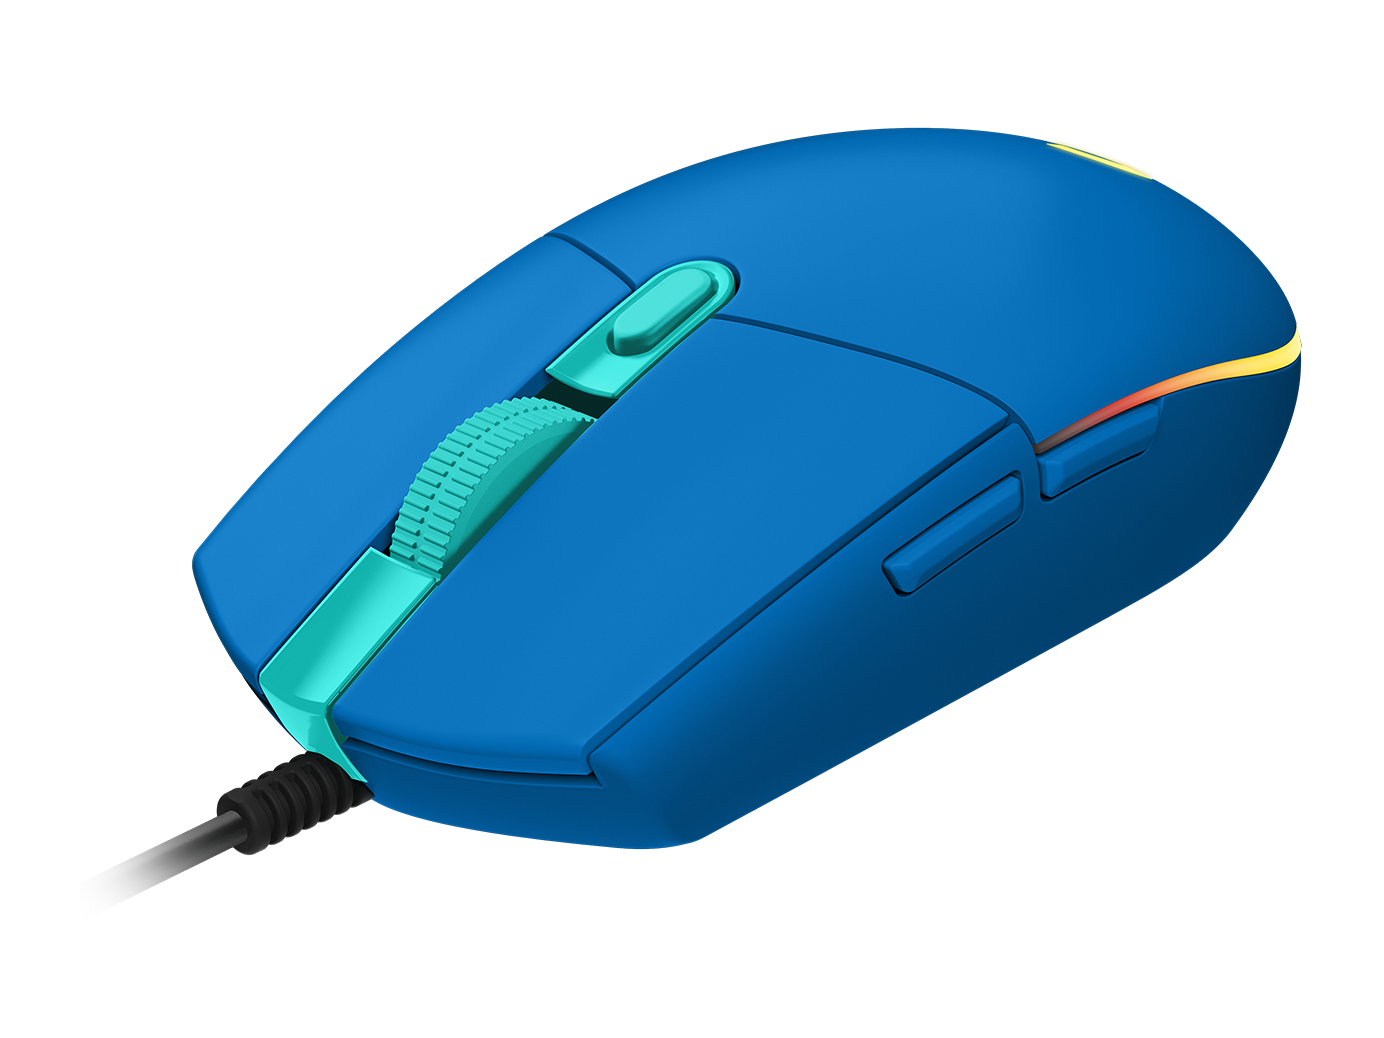 ロジクールG203 LIGHTSYNC RGB 6ボタン ゲーミング マウス